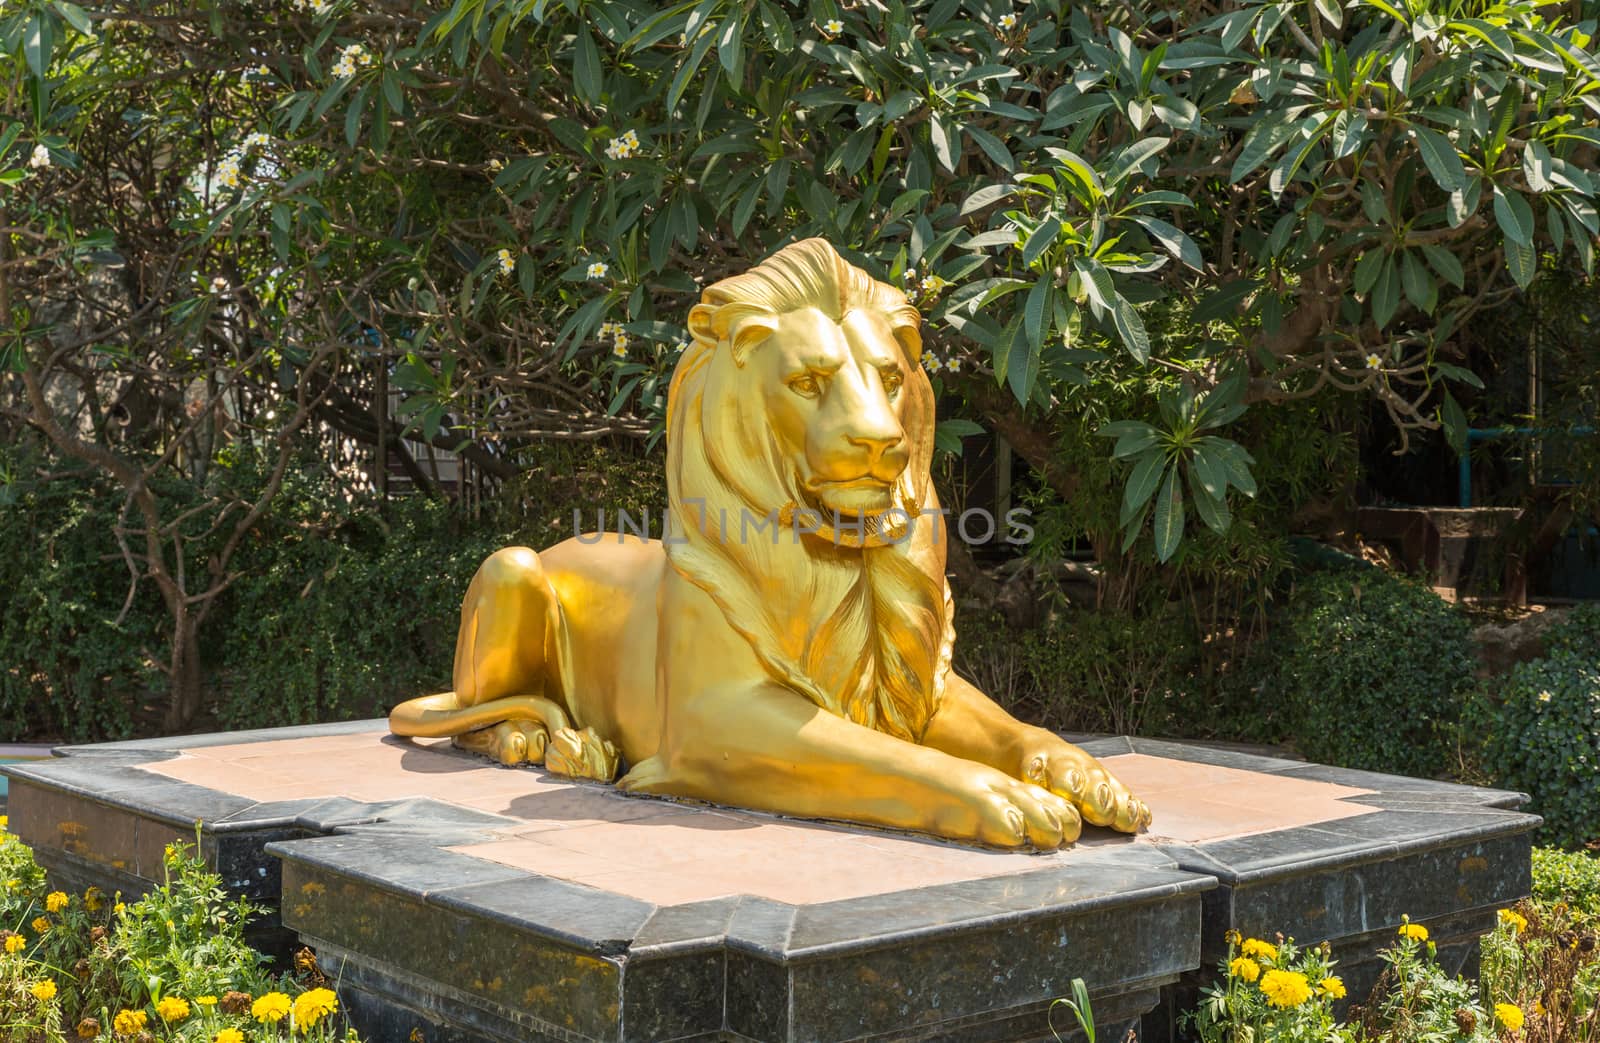 Sculpture of golden lion by Mieszko9